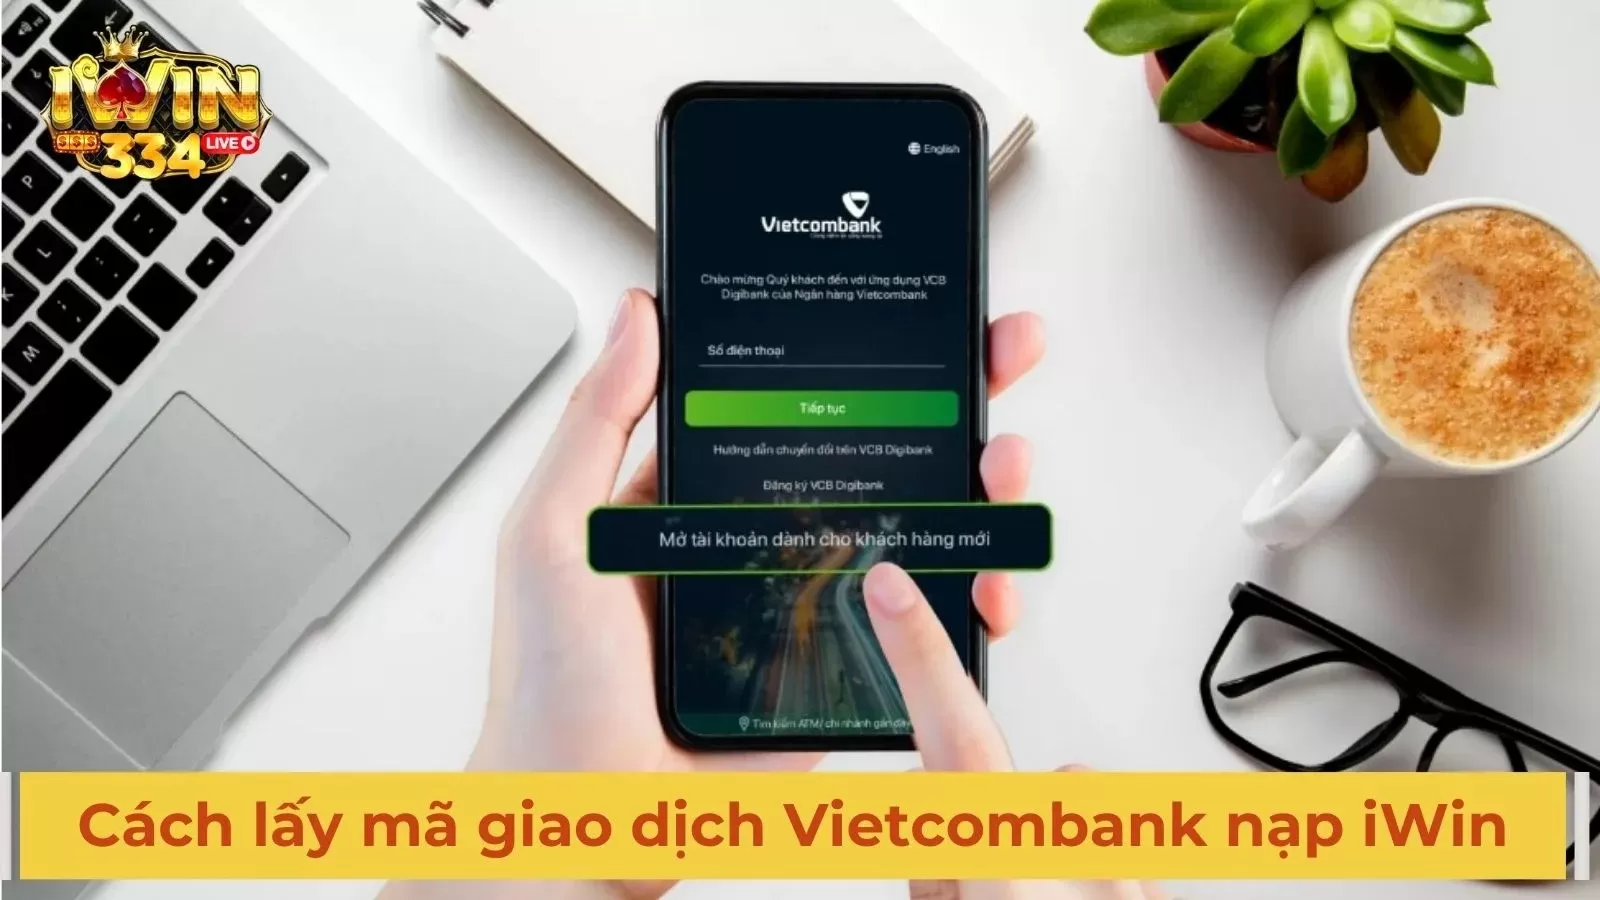 Hướng dẫn cách lấy mã giao dịch ngân hàng Vietcombank khi nạp tiền iWin